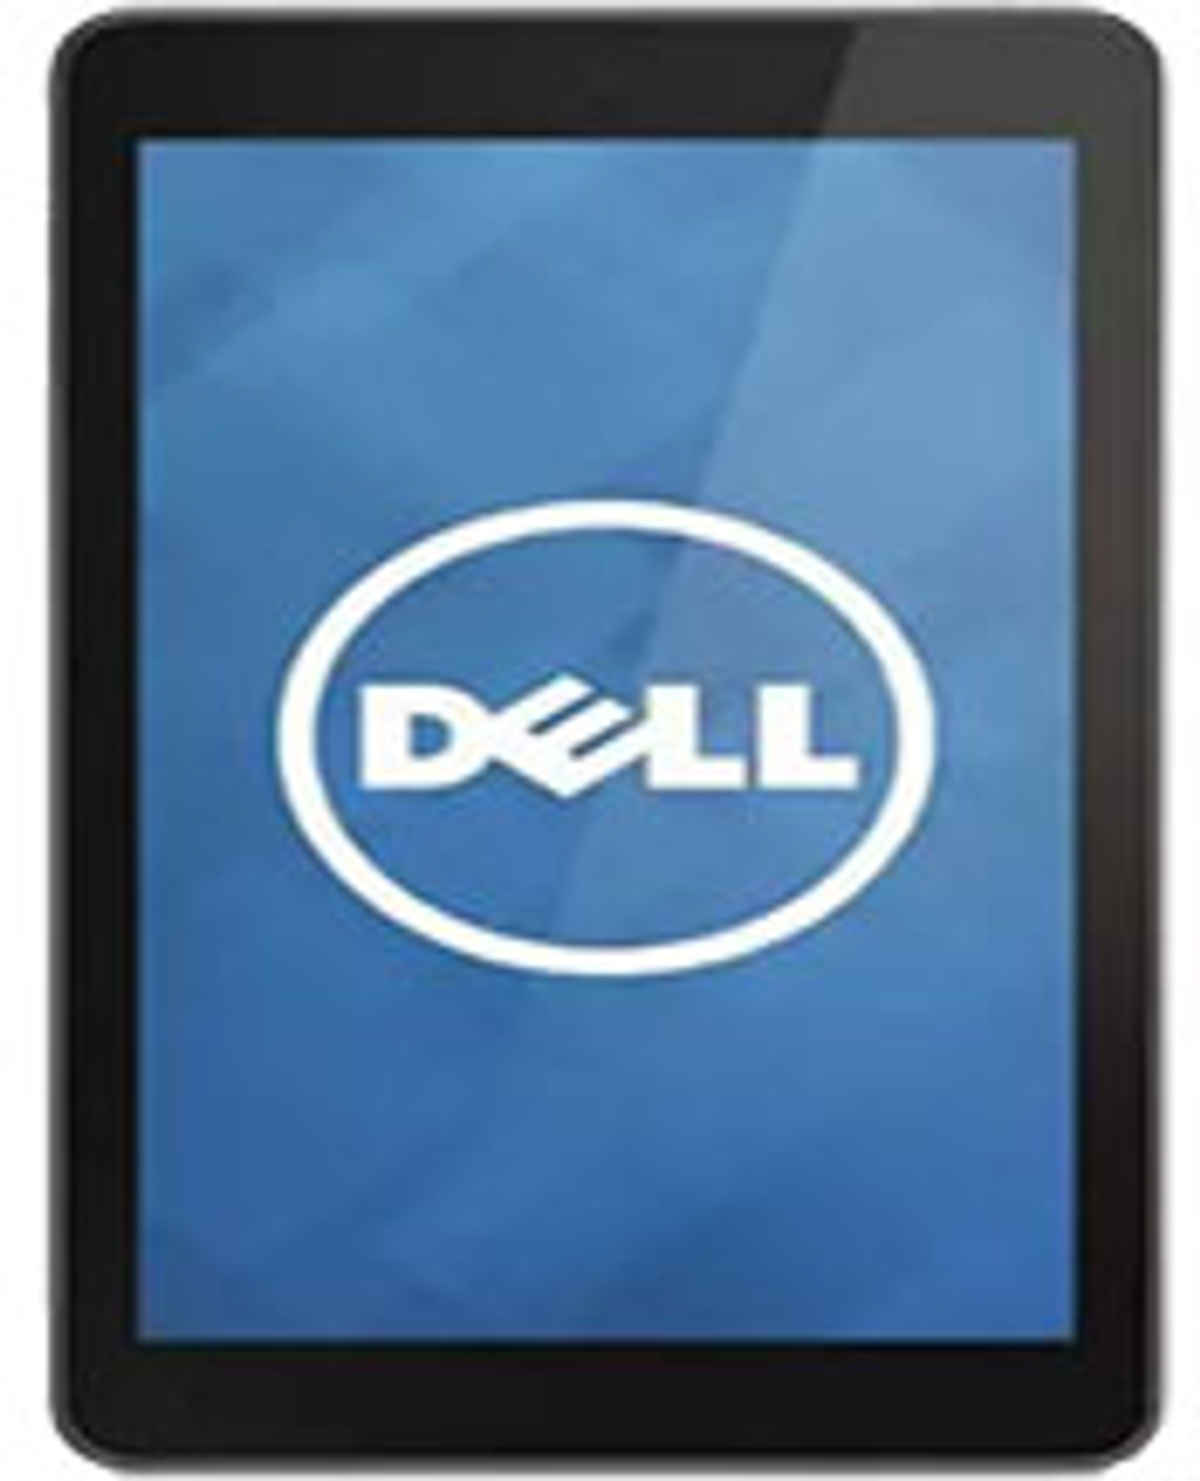 Dell Venue 8 32GB